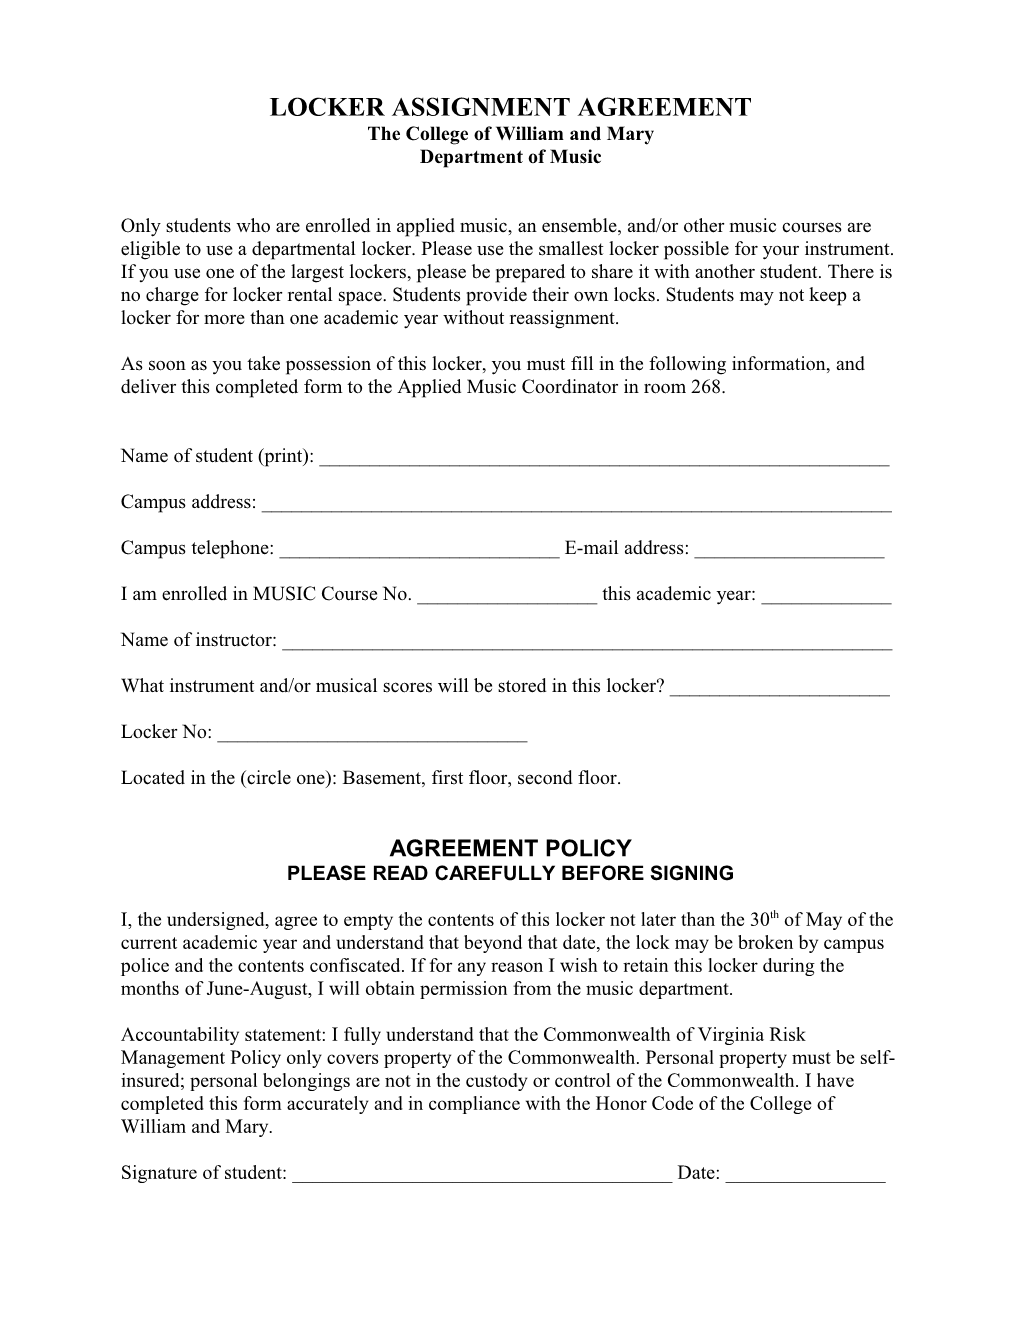 Locker Assignment Agreement